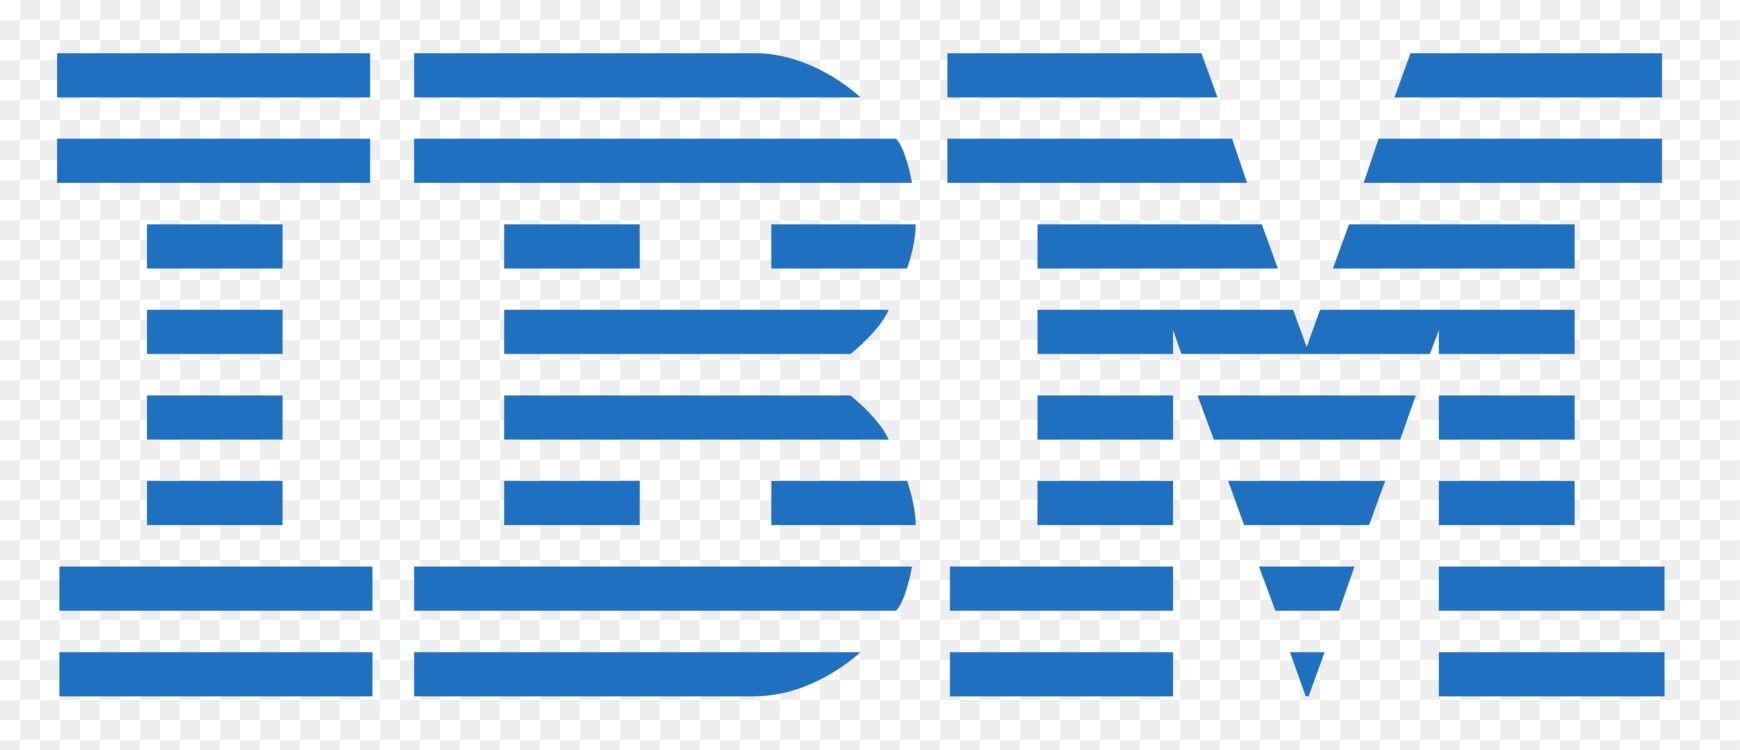 IBM Logo - IBM Logo Business Watson Computer Software Free PNG Image - Ibm,Logo ...